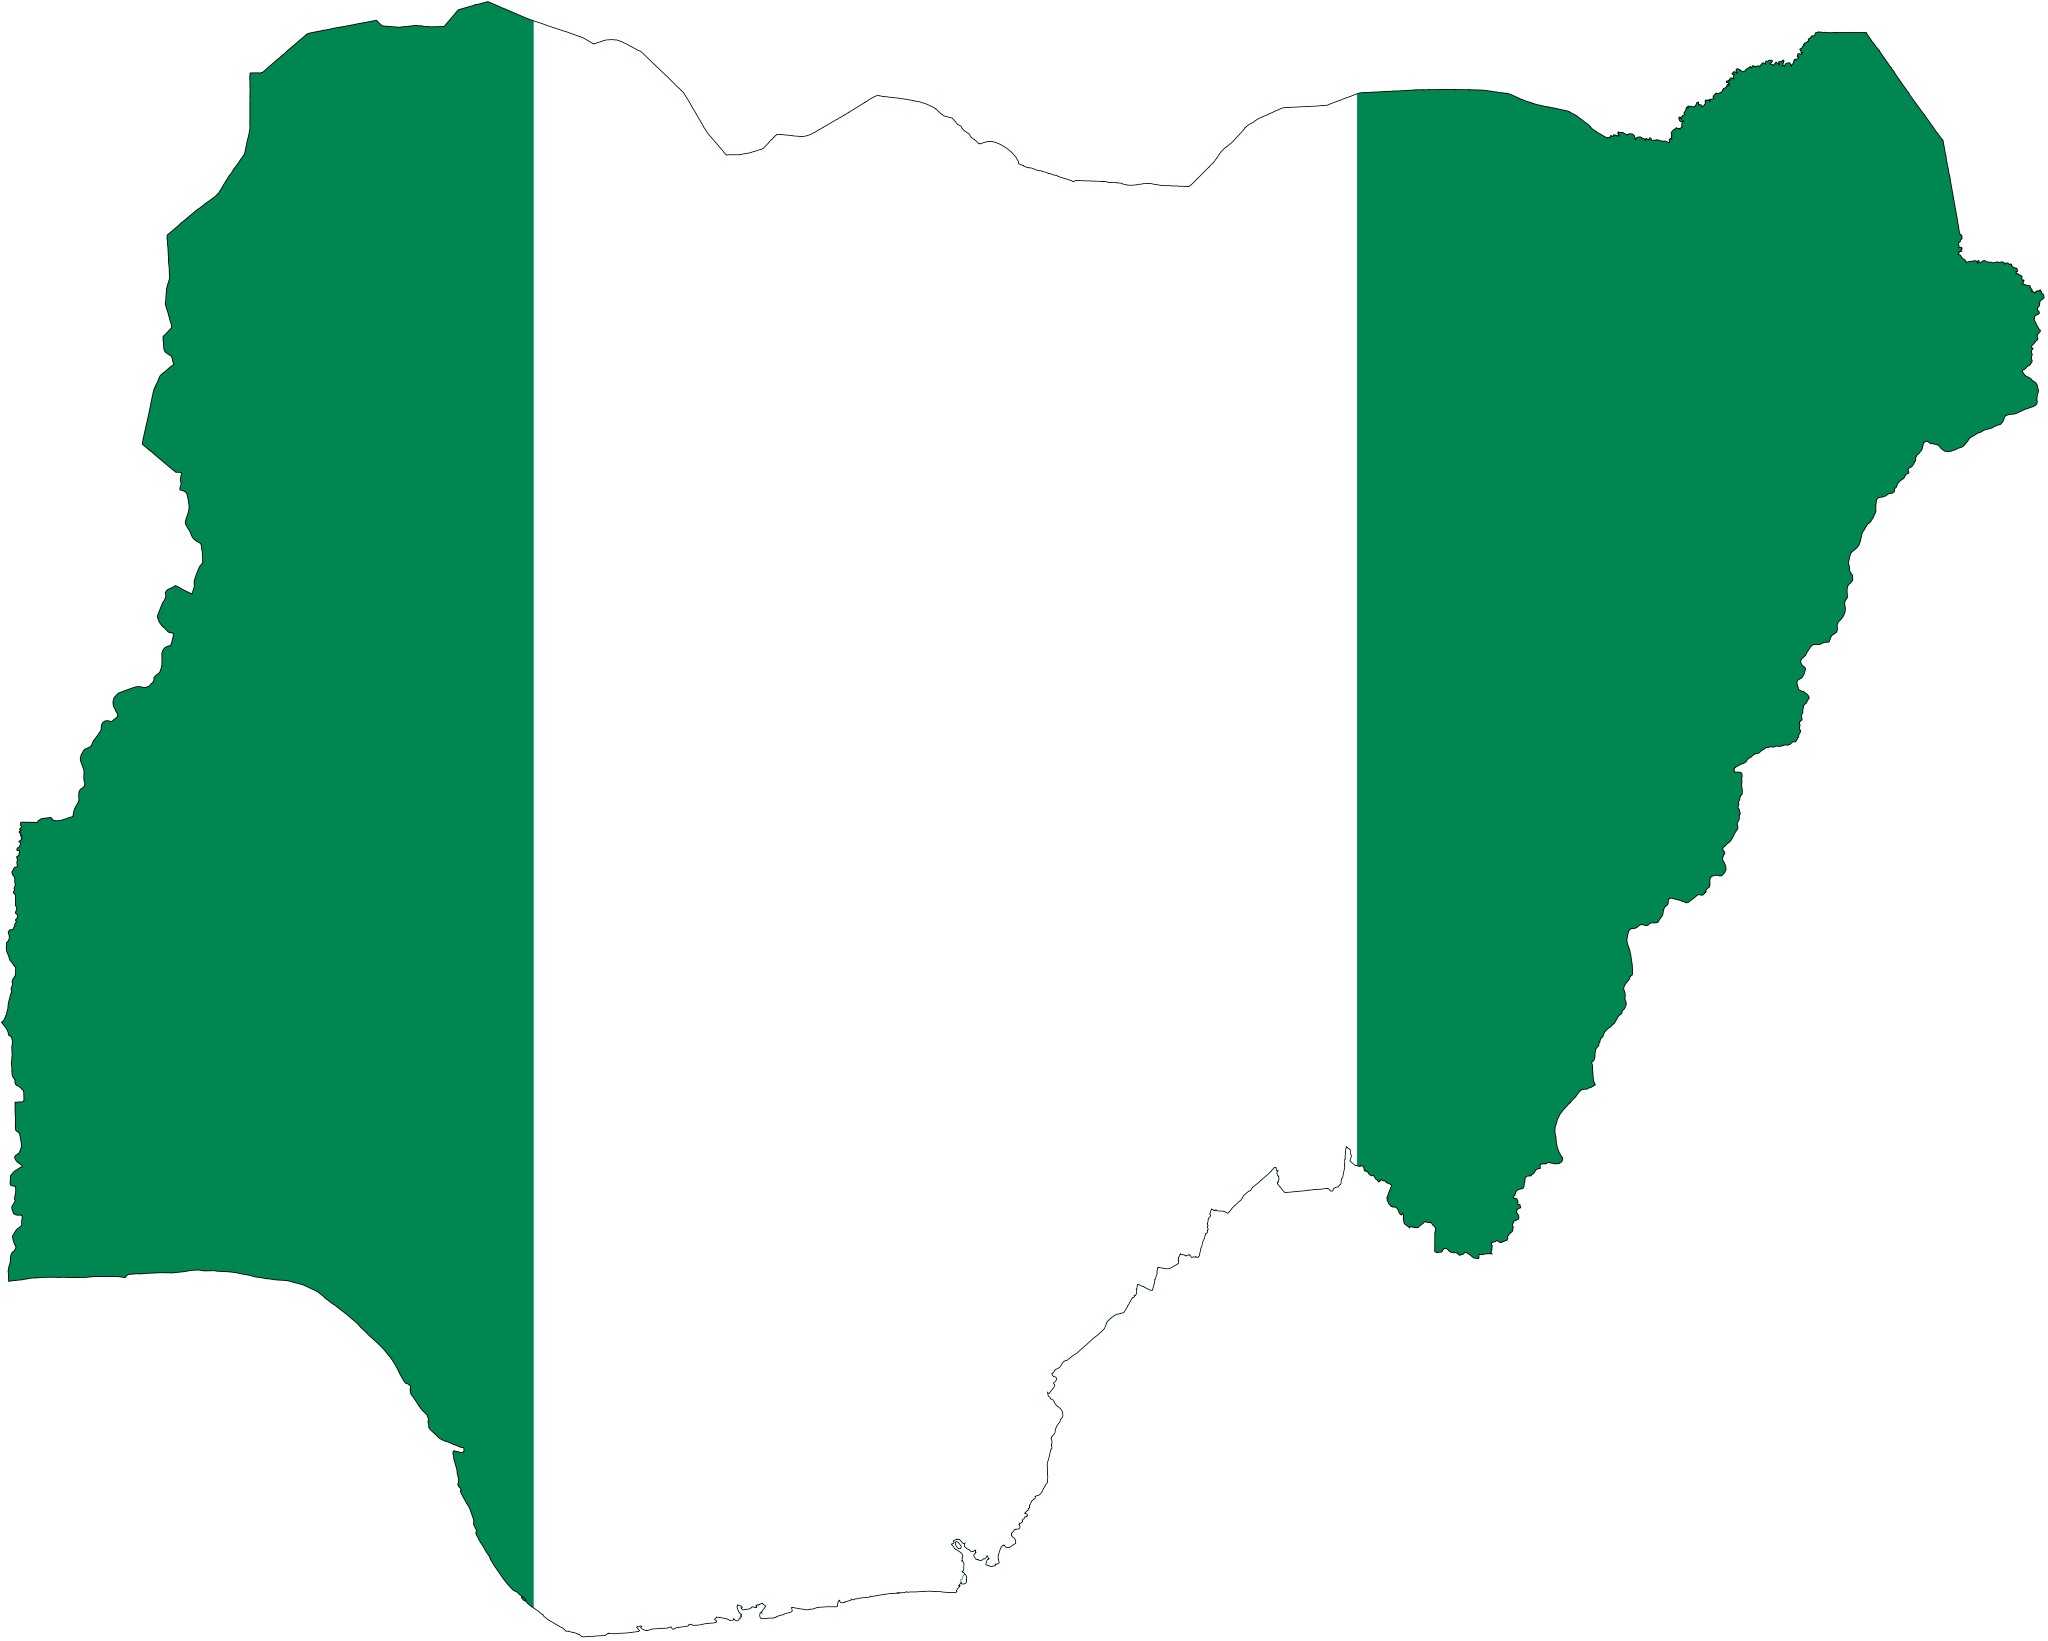 Nigeria1000